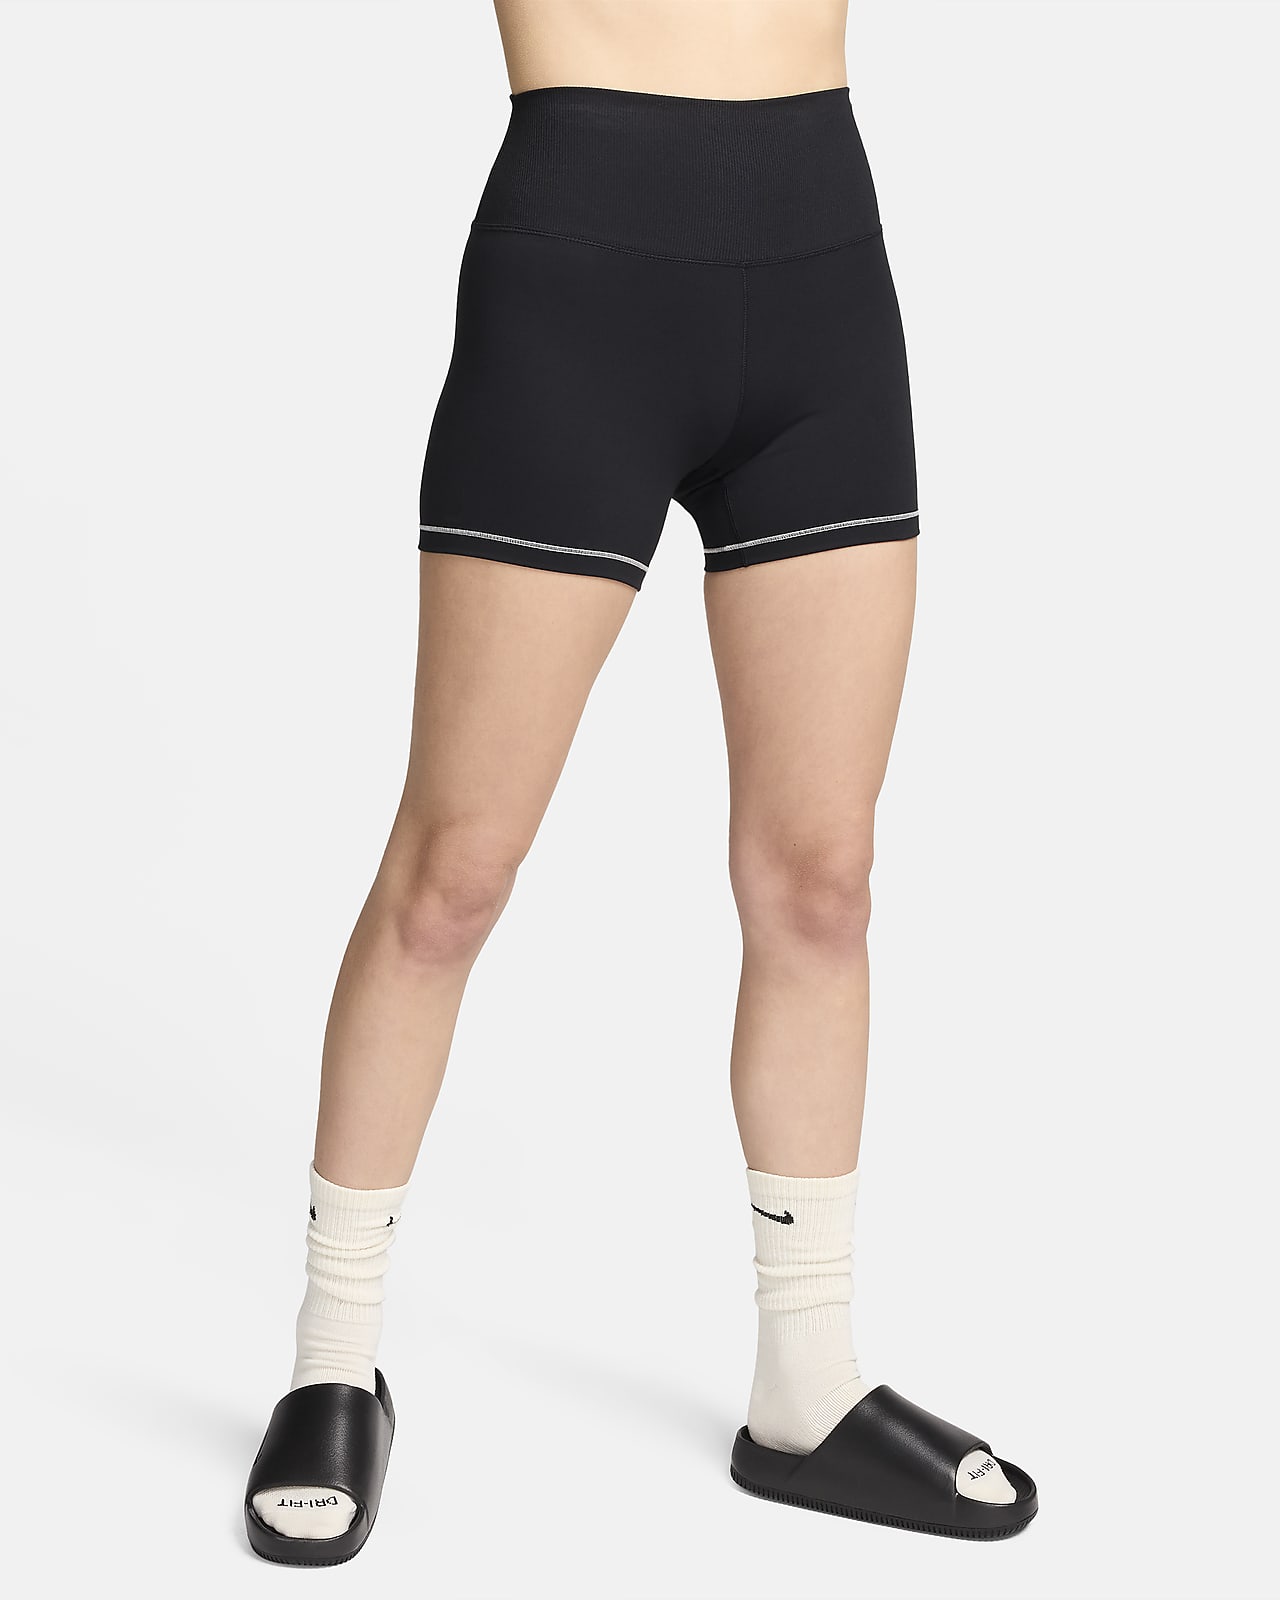 Nike One Rib Malles ciclistes curtes de cintura alta de 13 cm - Dona